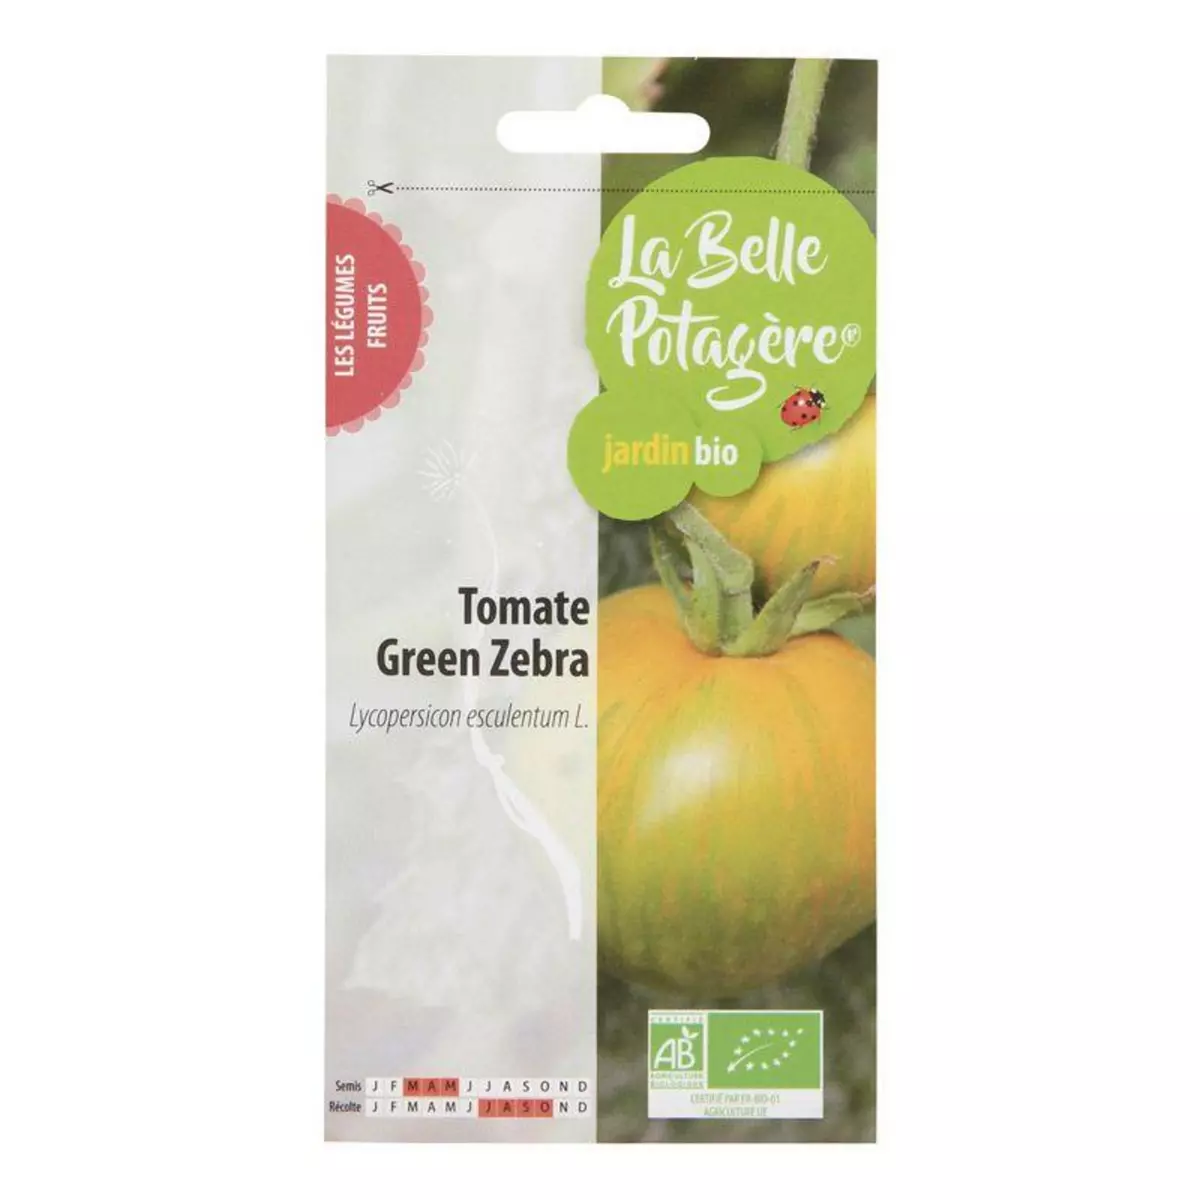  Graines à semer - Tomate Green zebra - 0,15 g